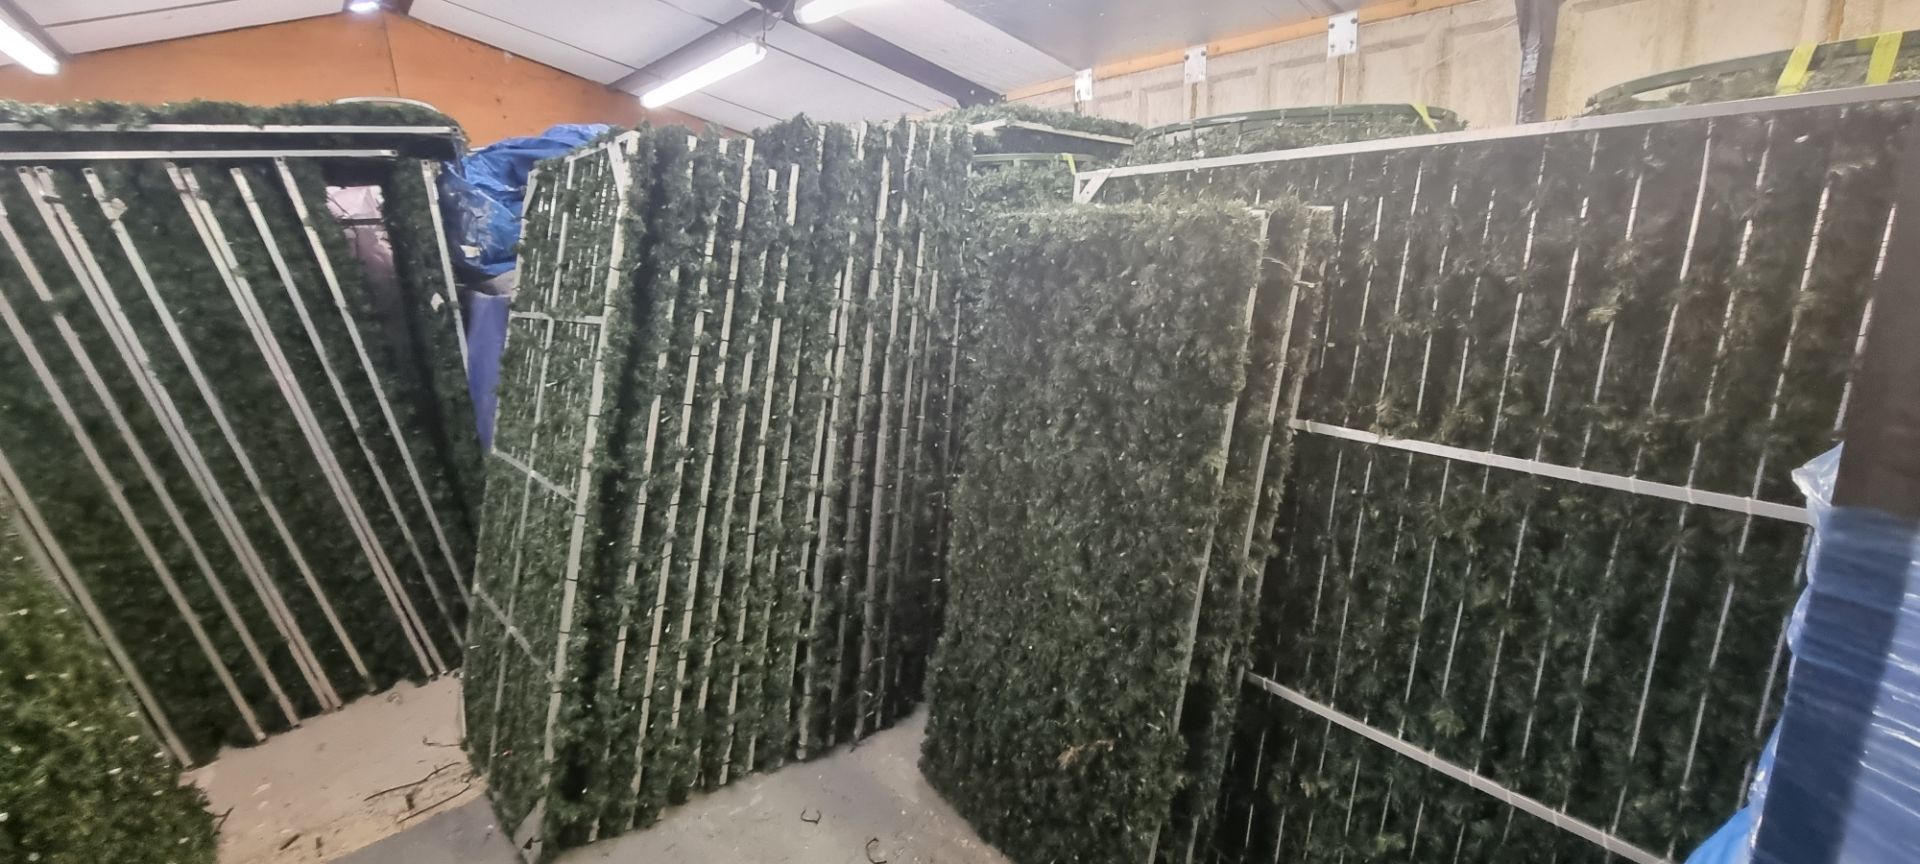 24 x Seasonal Aluminium Panels with Green Garland